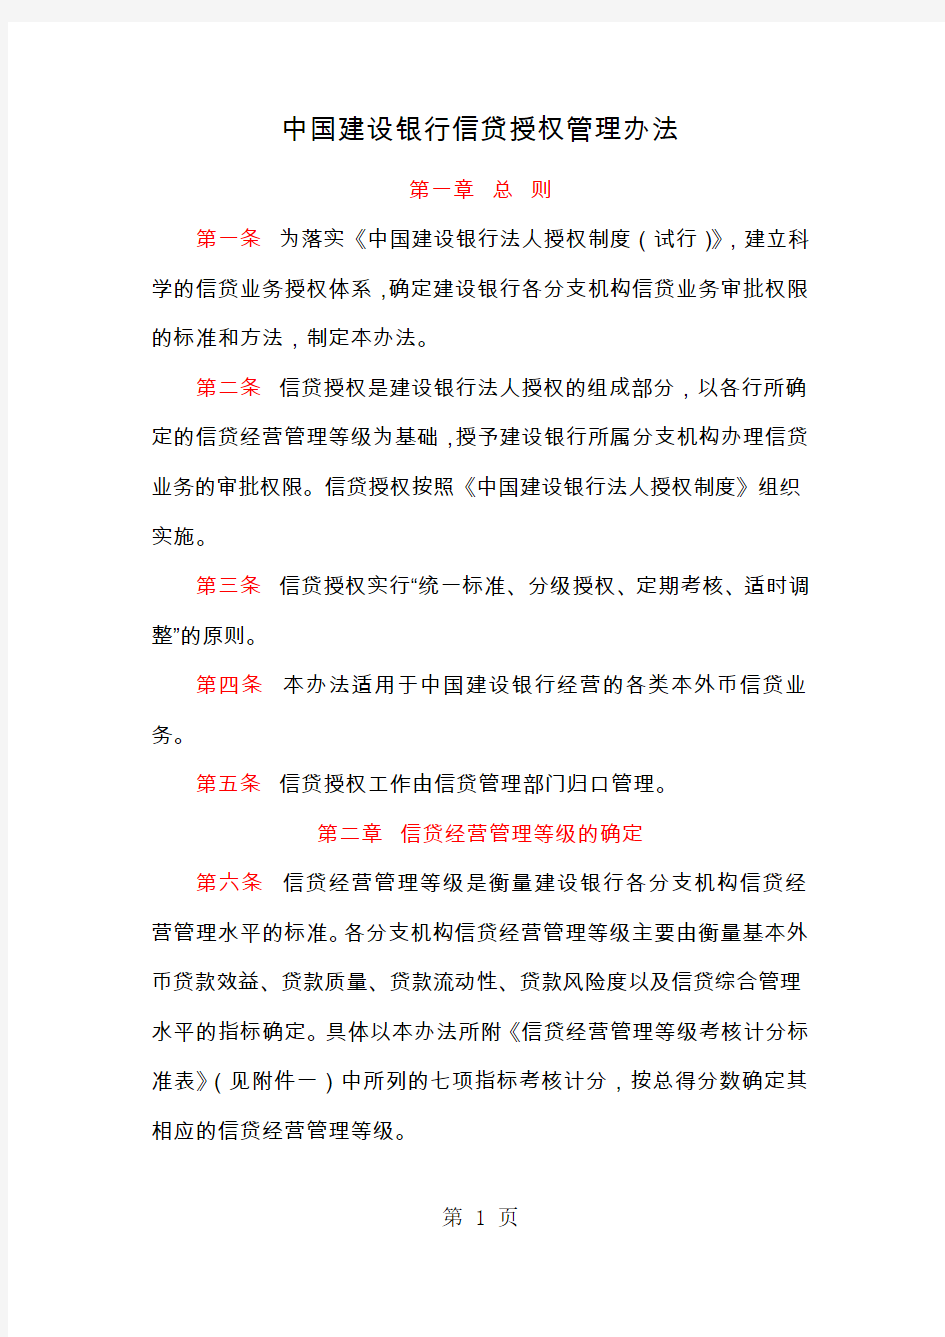 中国建设银行信贷授权管理办法共9页文档